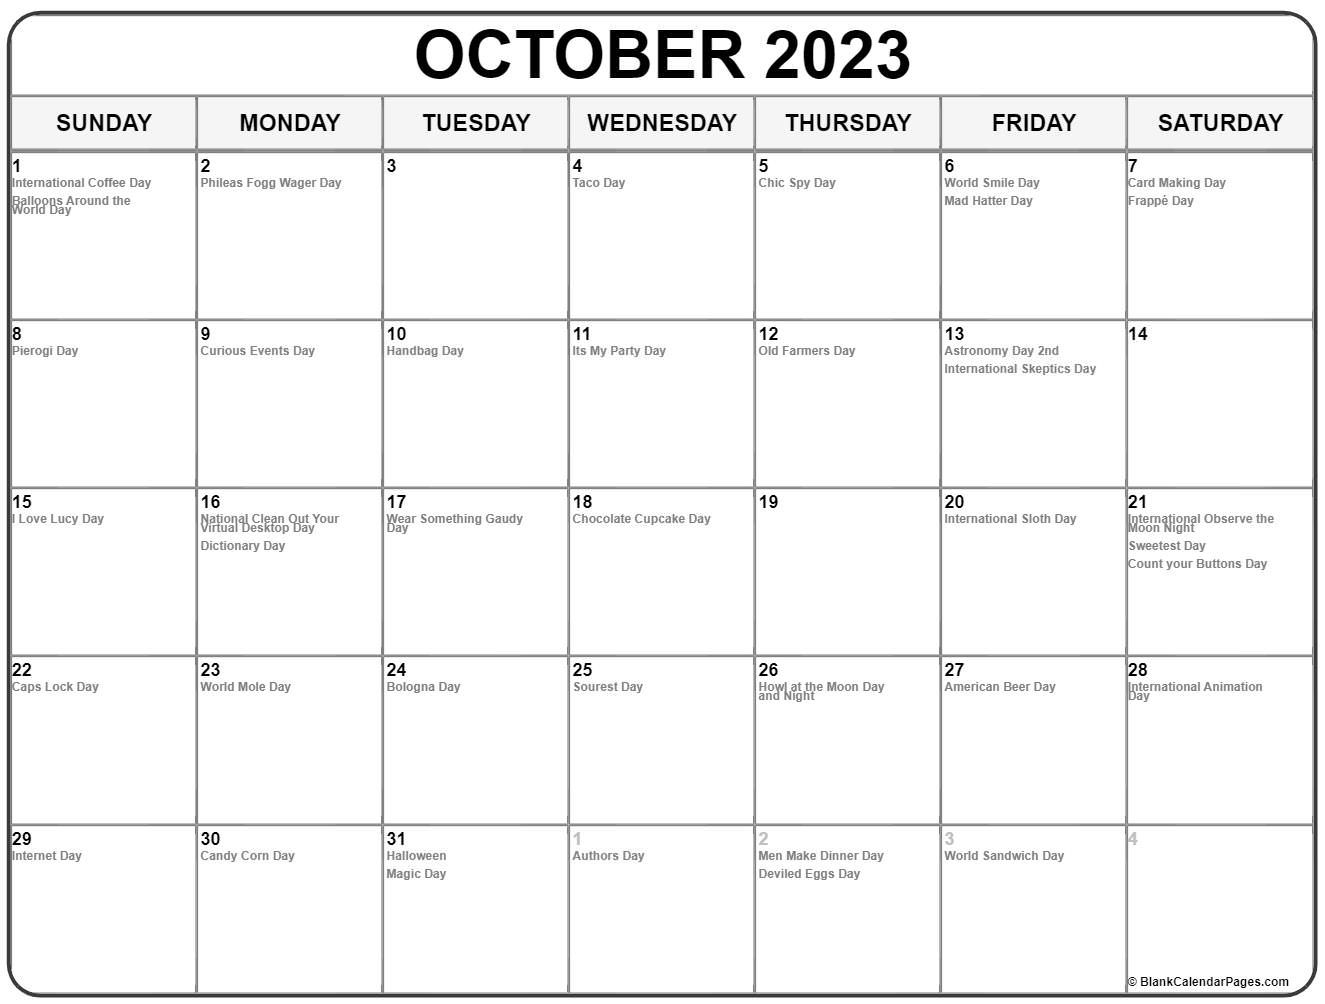 October 2023 Calendar Special Days - Get Calendar 2023 Update